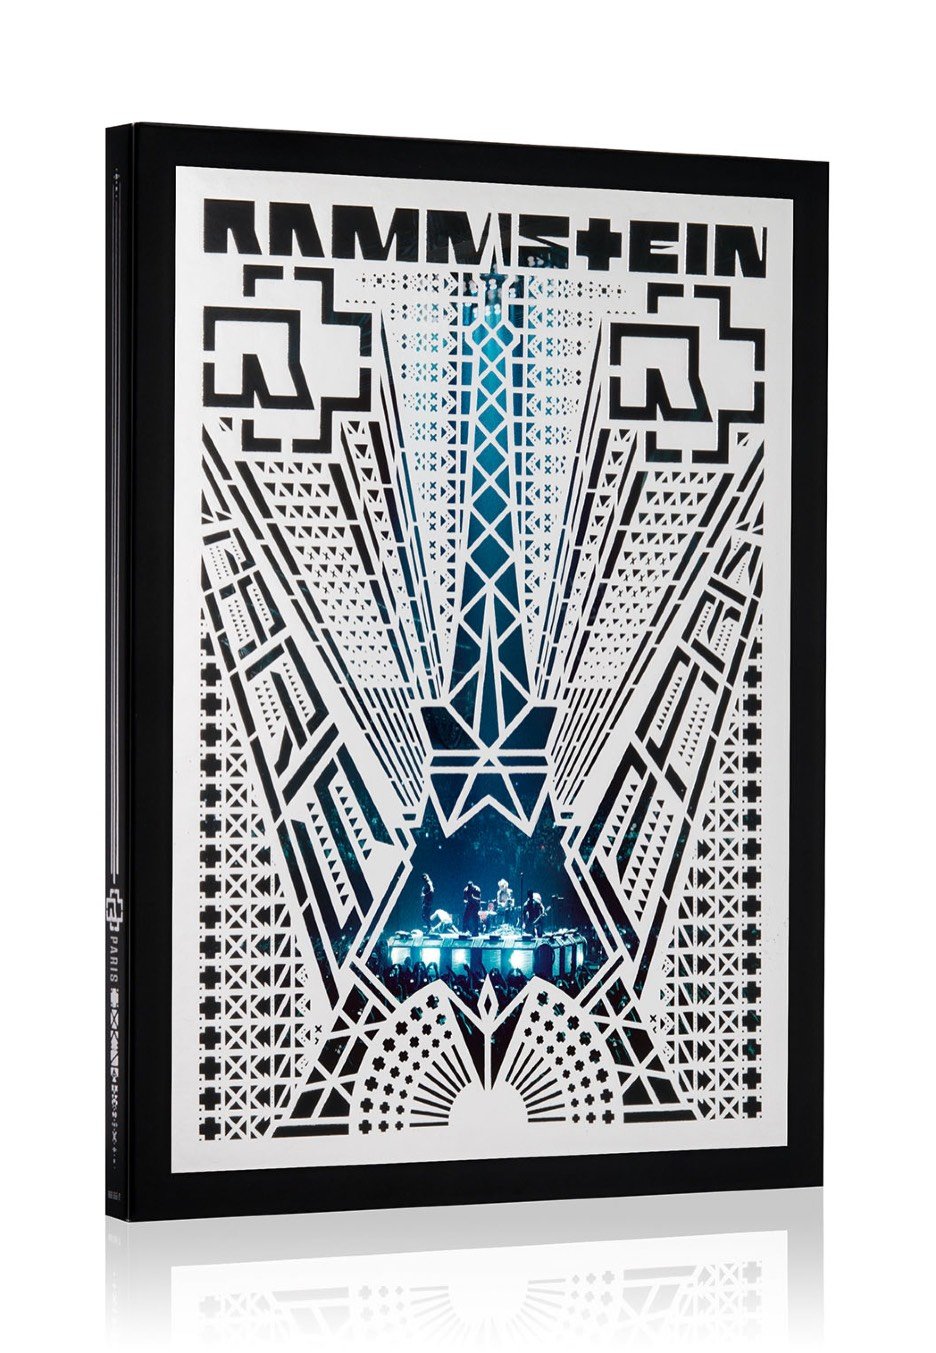 Rammstein - Rammstein: Paris (Special Edt.) - 2 CD + DVD